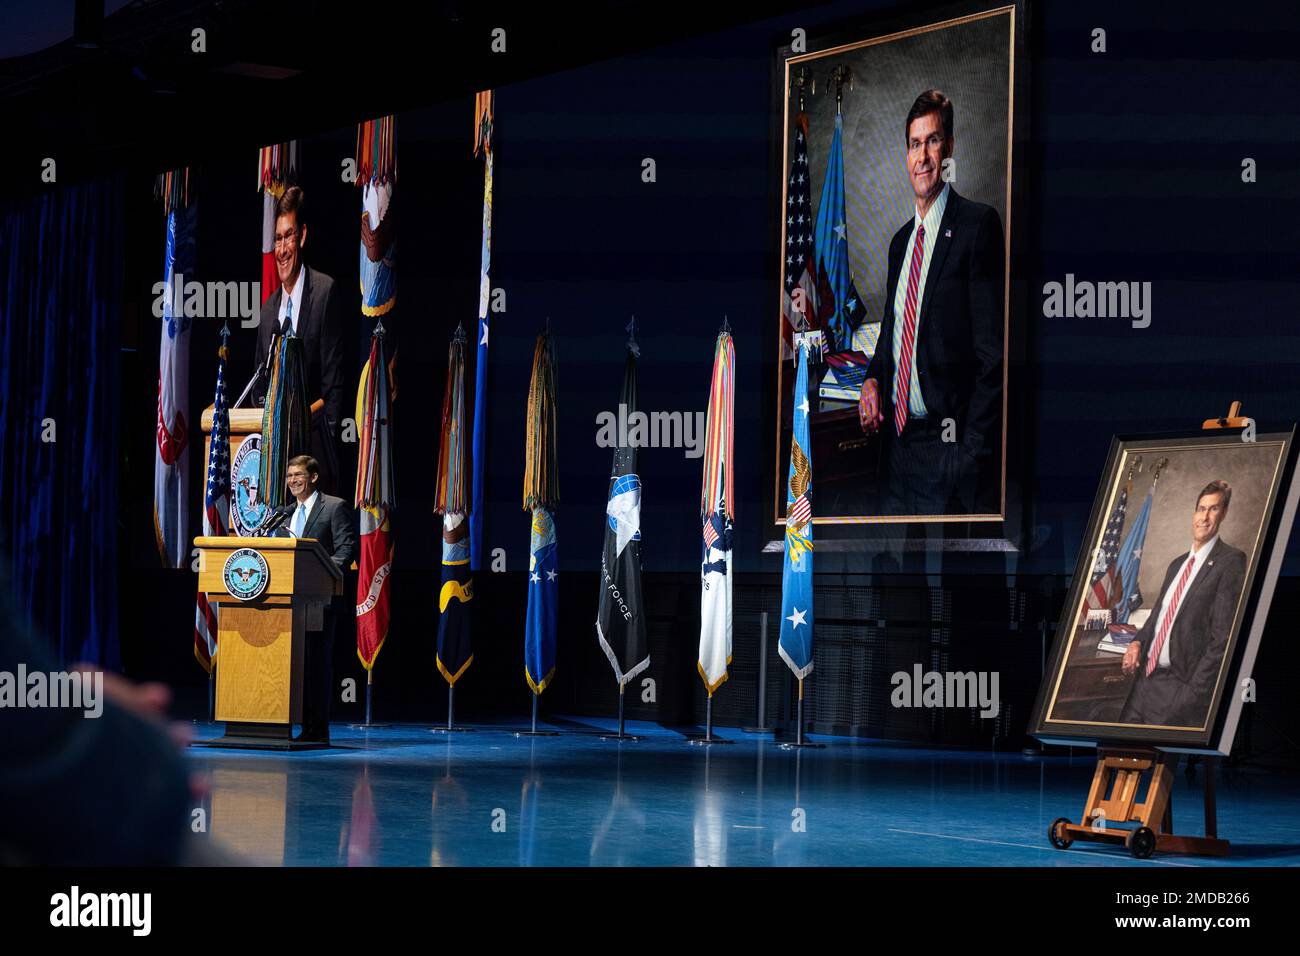 L'ancien secrétaire à la Défense, Mark Esper, prend la parole lors de sa cérémonie officielle de dévoilement du portrait au joint base Myer-Henderson Hall, en Virginie, à 15 juillet 2021. (Photo DoD des États-Unis Maître de vaisseau 2nd classe Alexander Kubitza) Banque D'Images